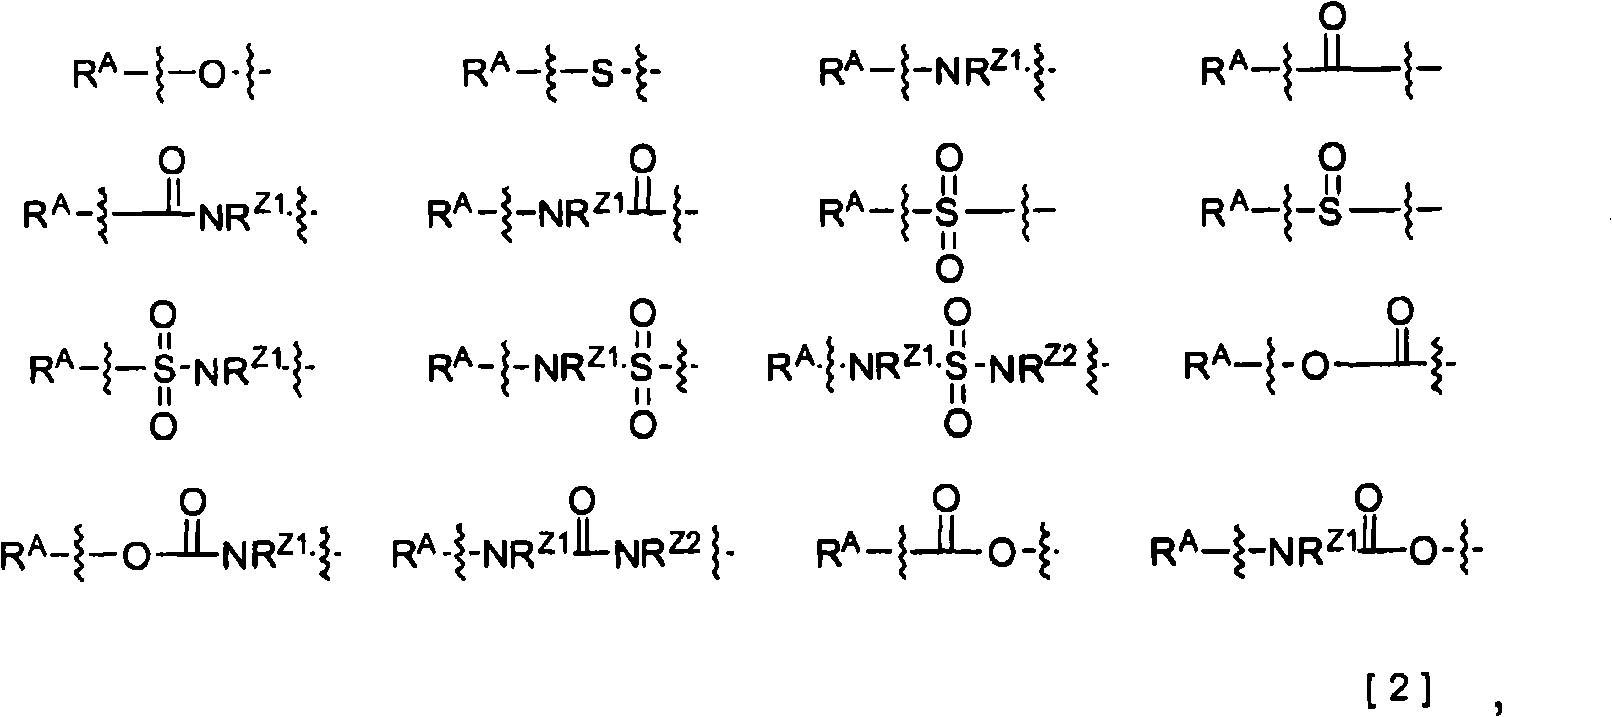 2-pyridone compounds